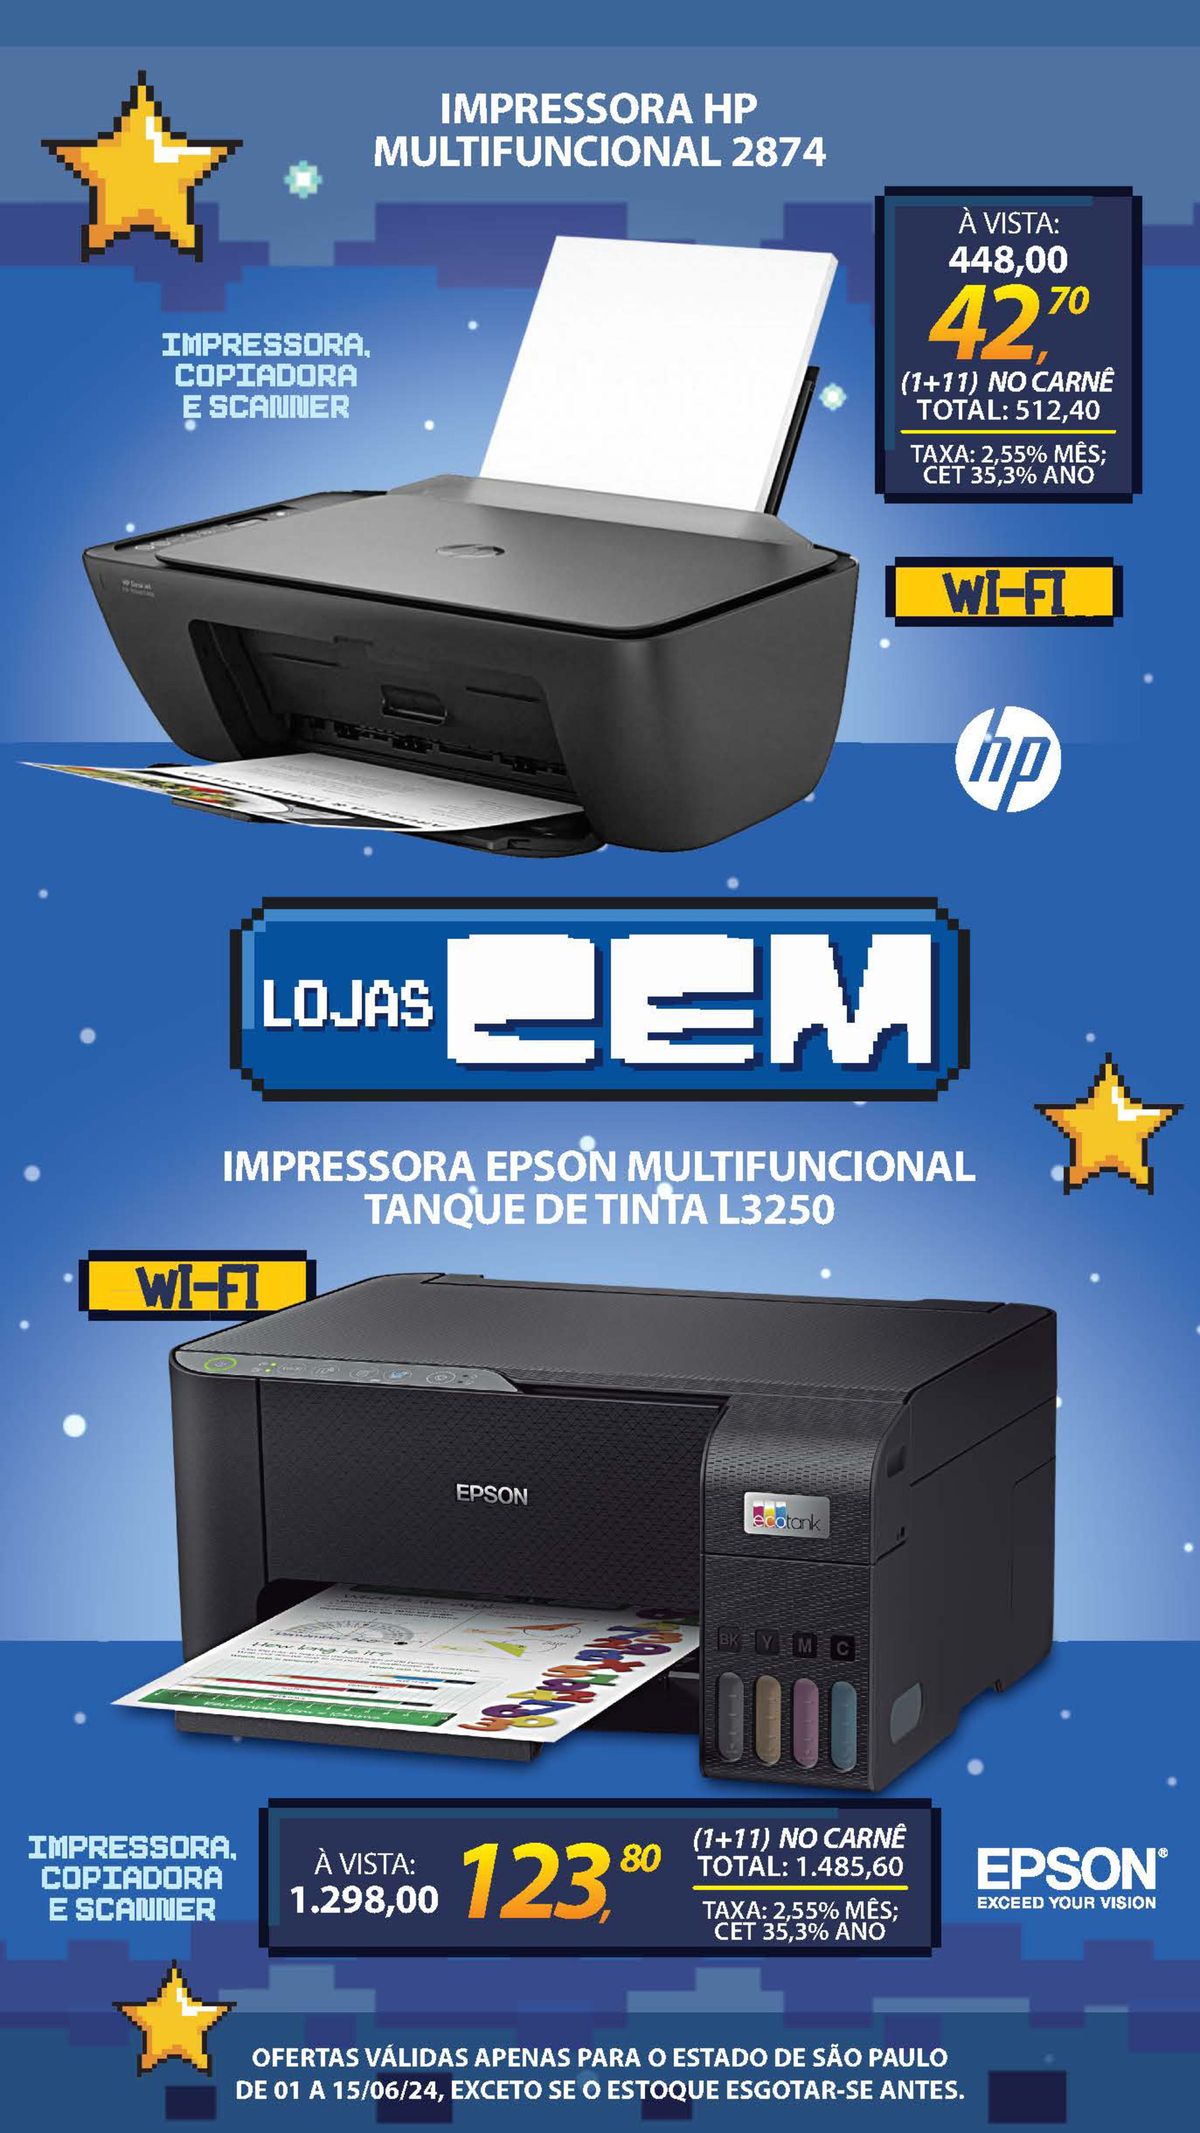 Impressora HP multifuncional por R$448,00